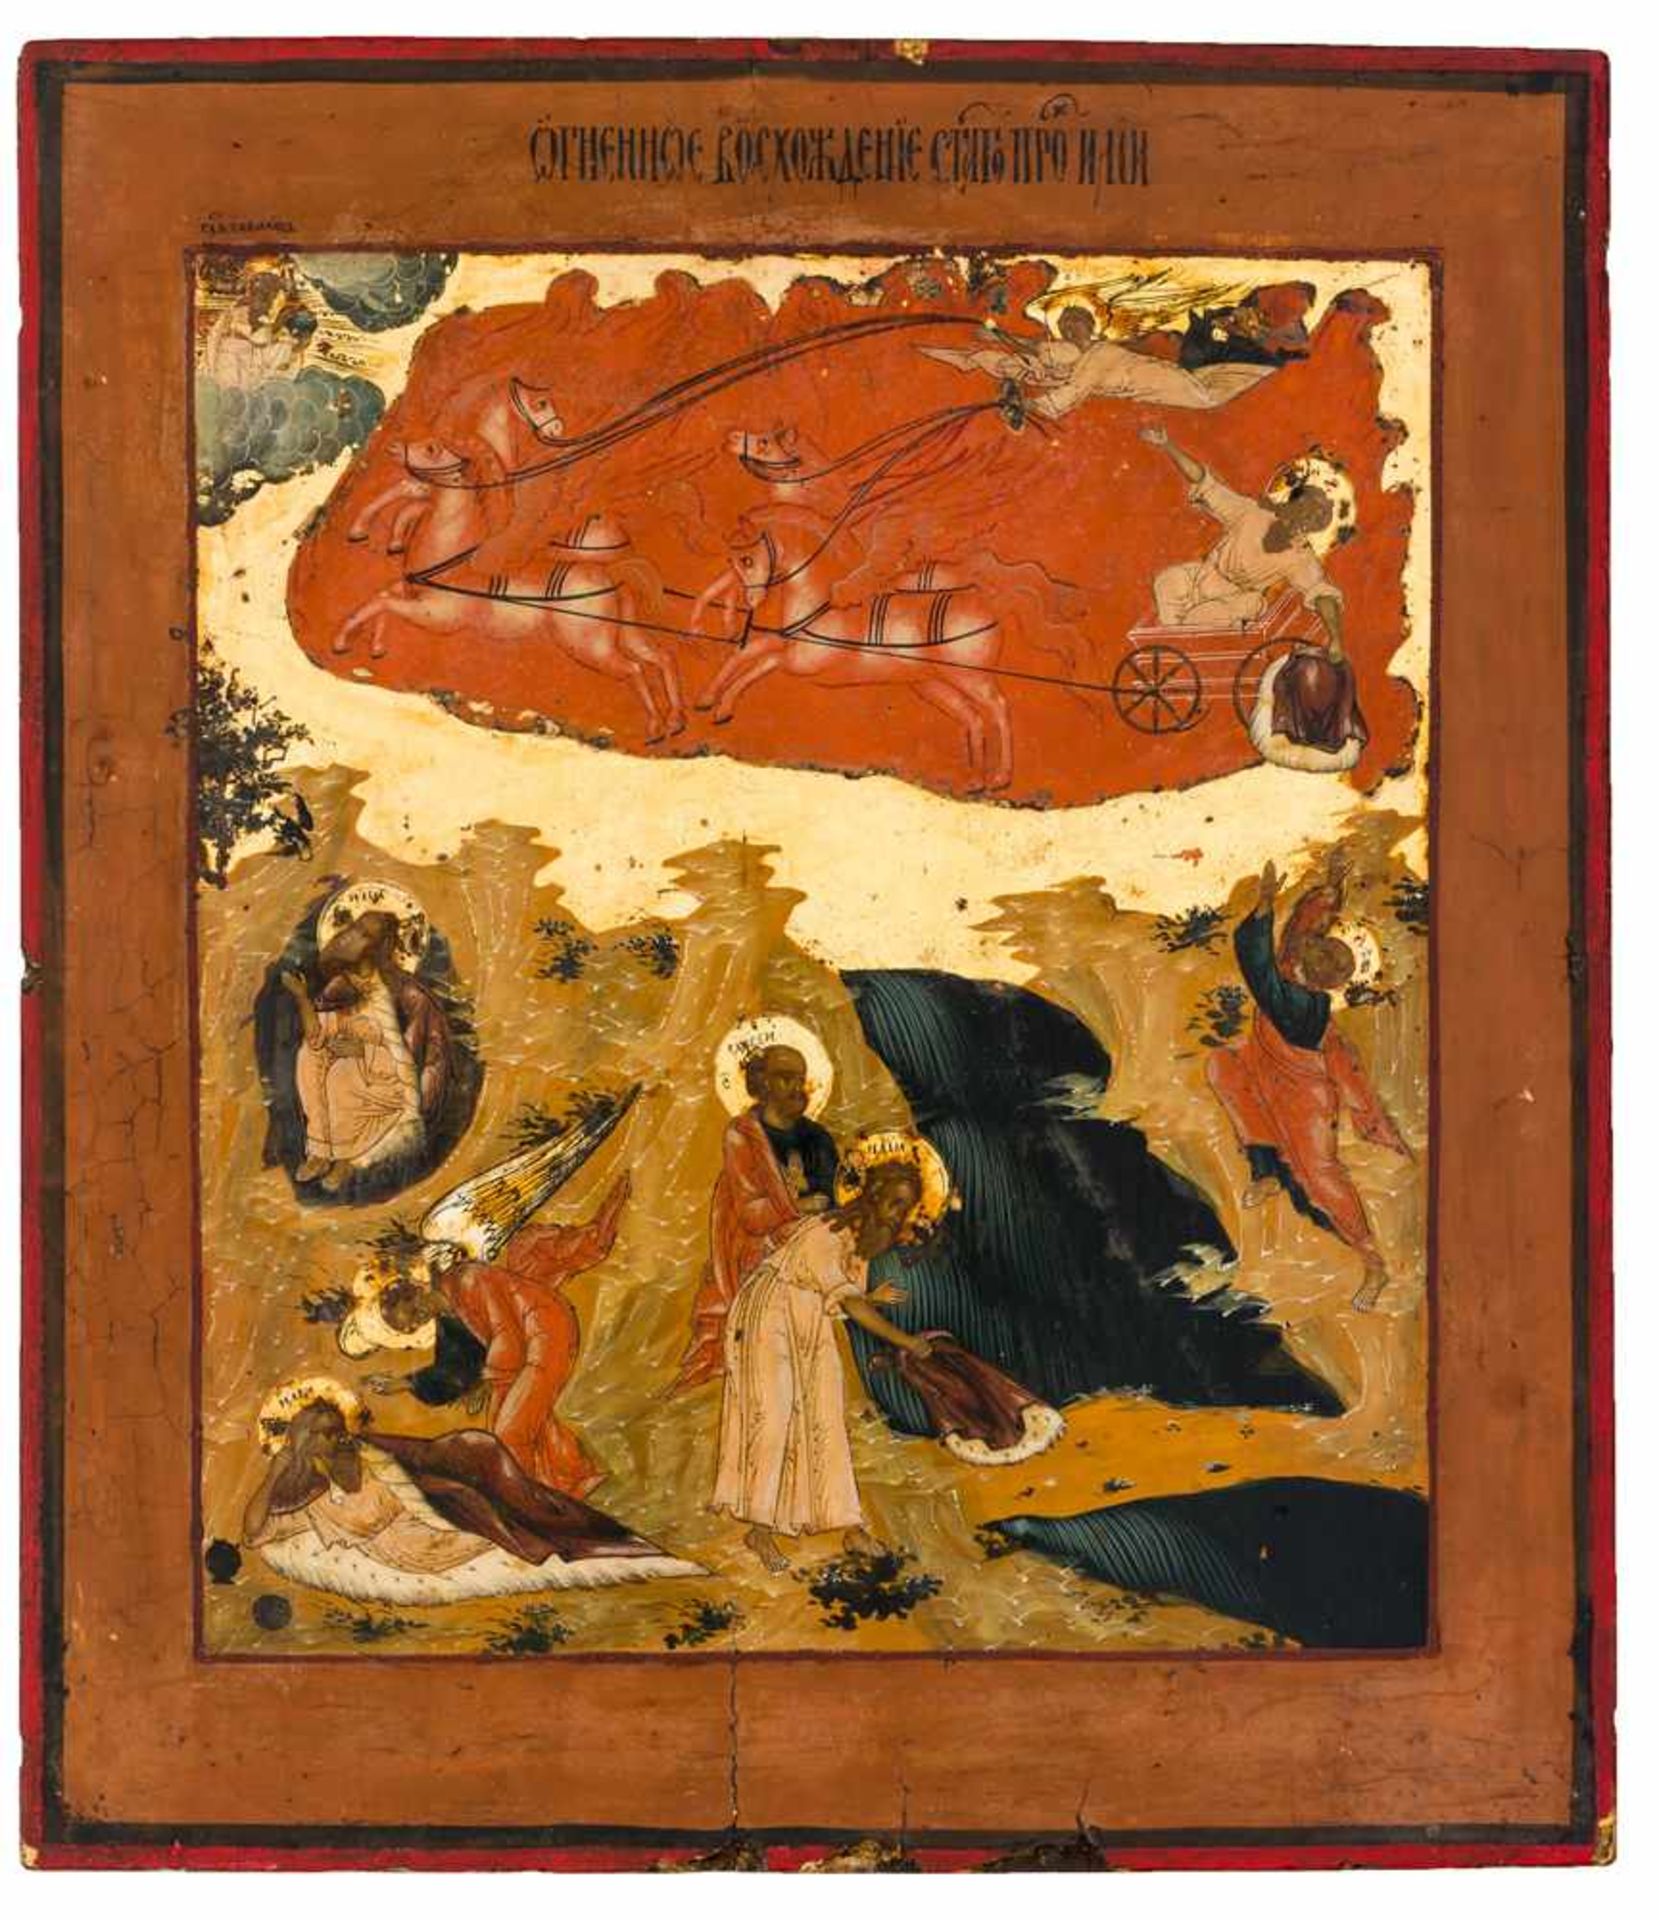 *Hl. Prophet Elias mit Vita Russische Ikone, 1. Hälfte 19. Jh. 40 x 35 cm Auf der Ikone sind